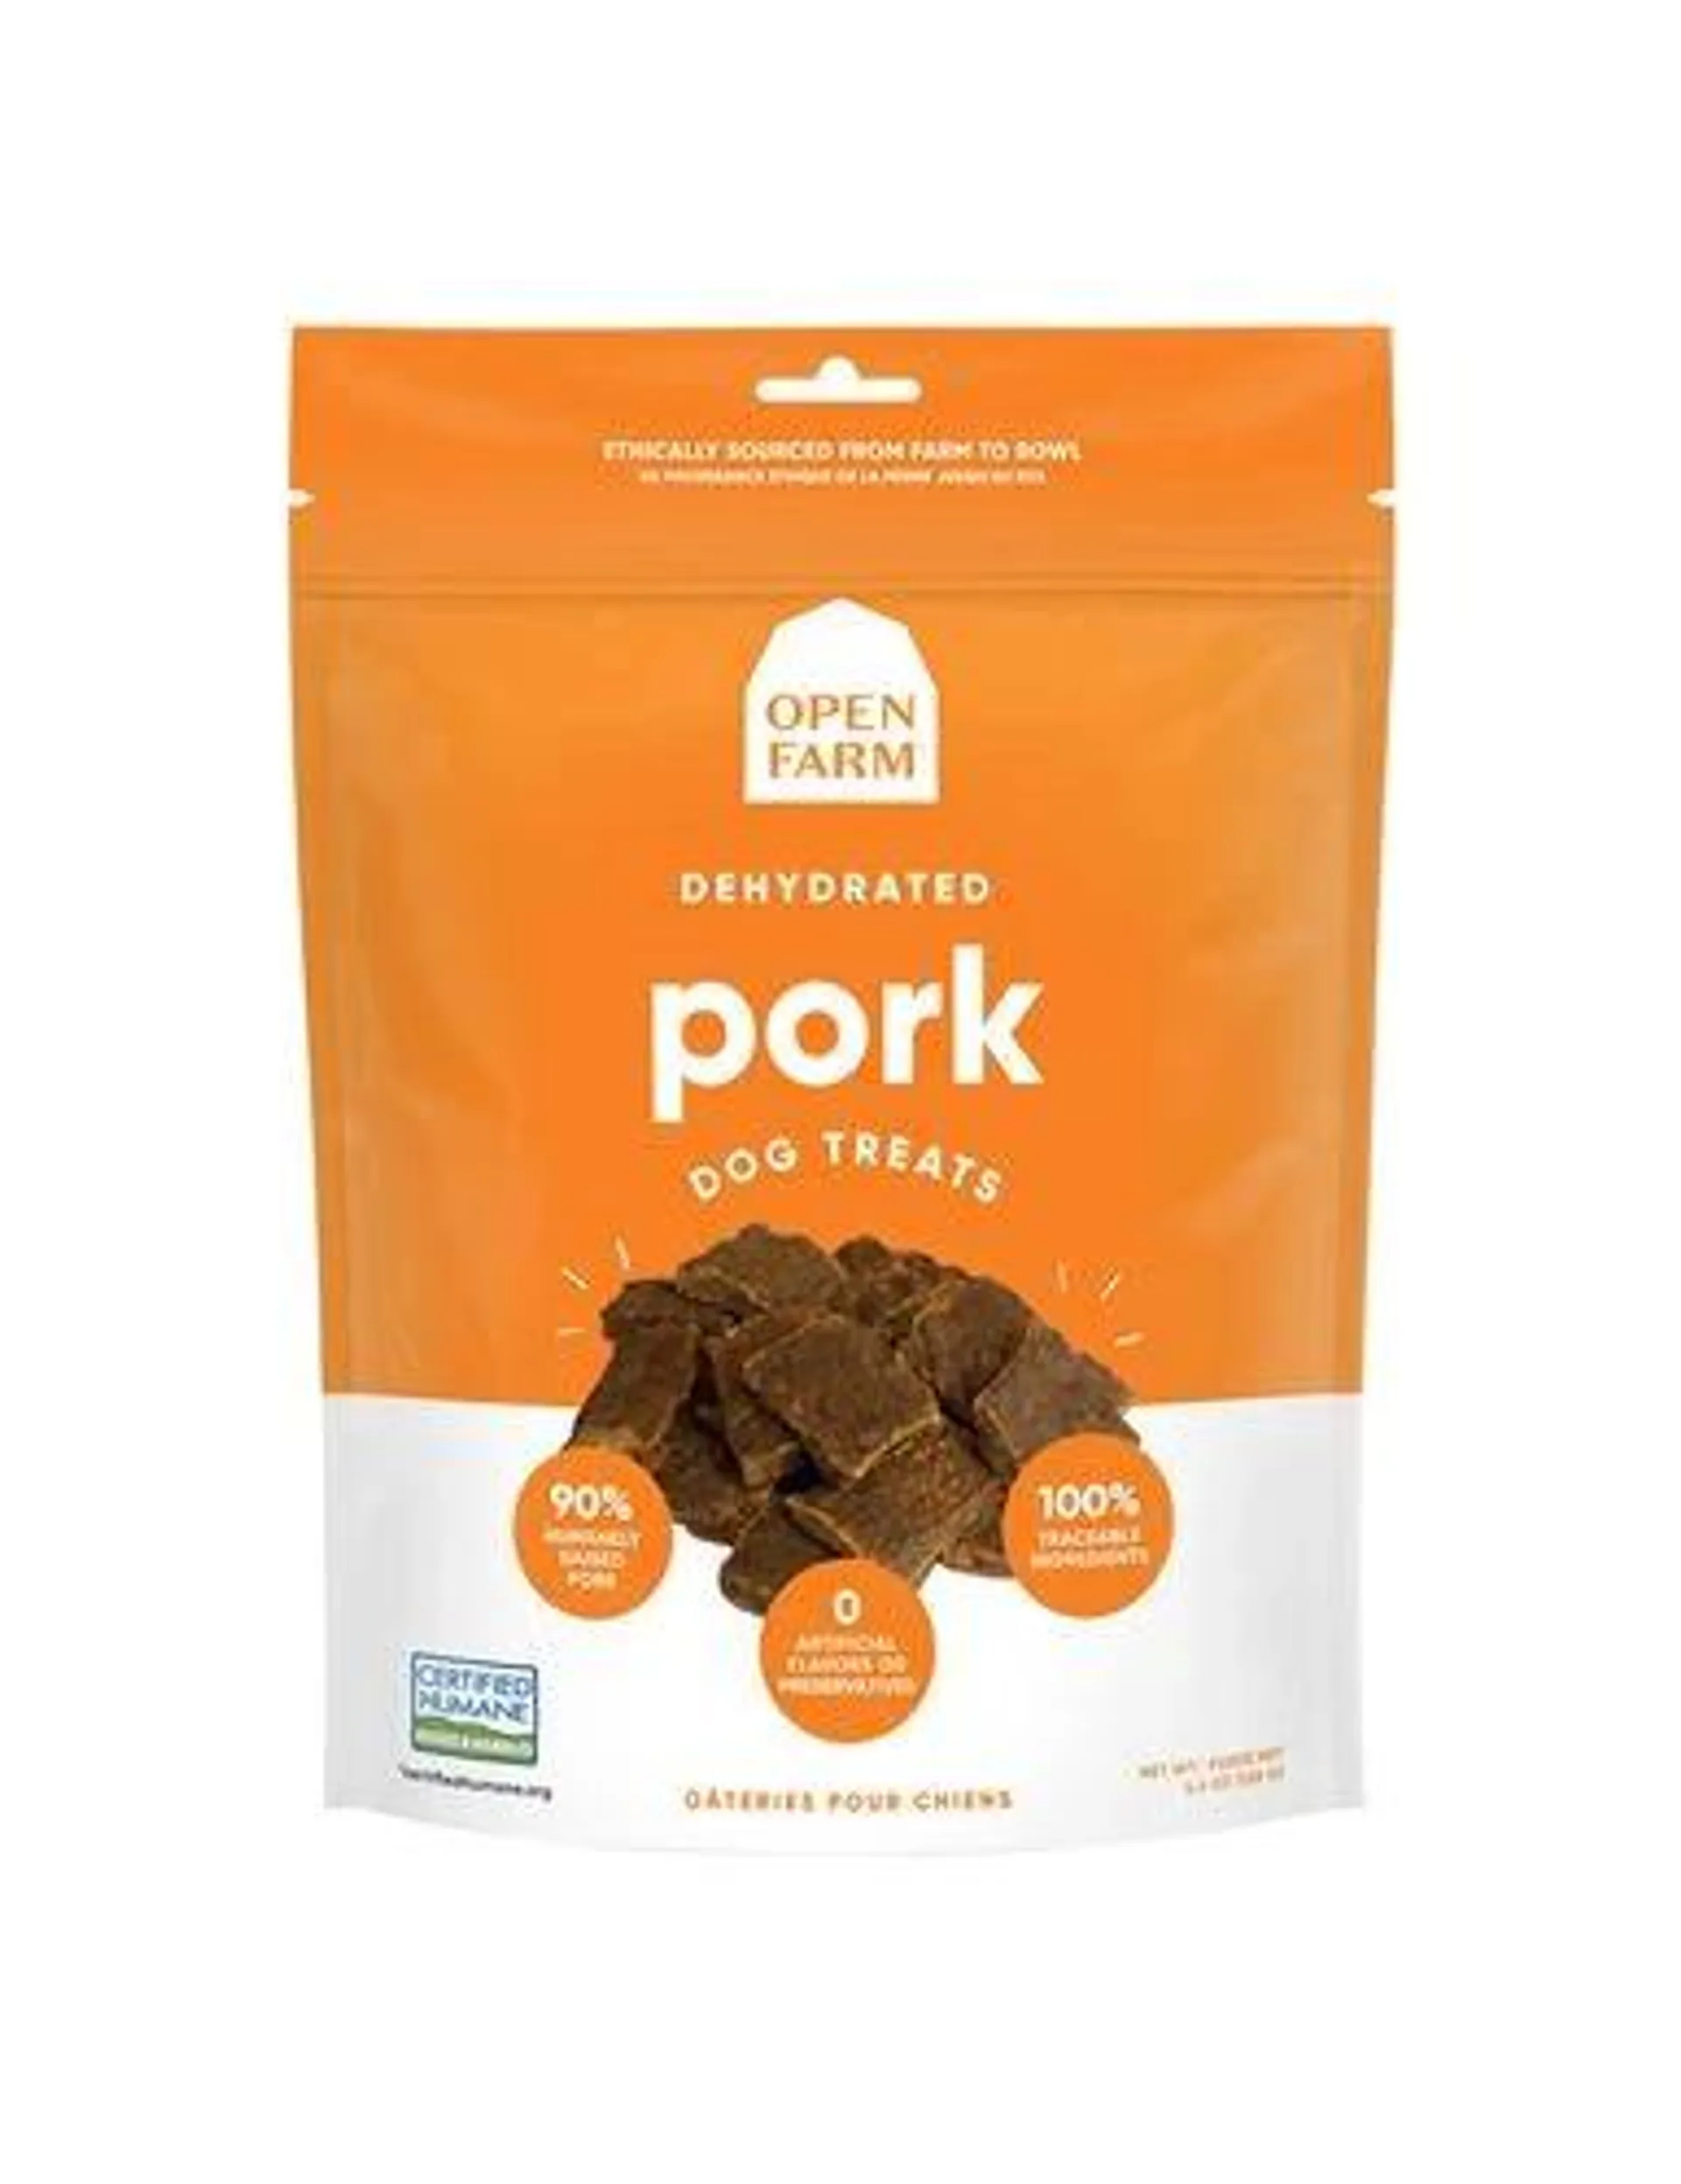 Open Farm Dehydrated Pork Dog Treat, 4.5 Ounces